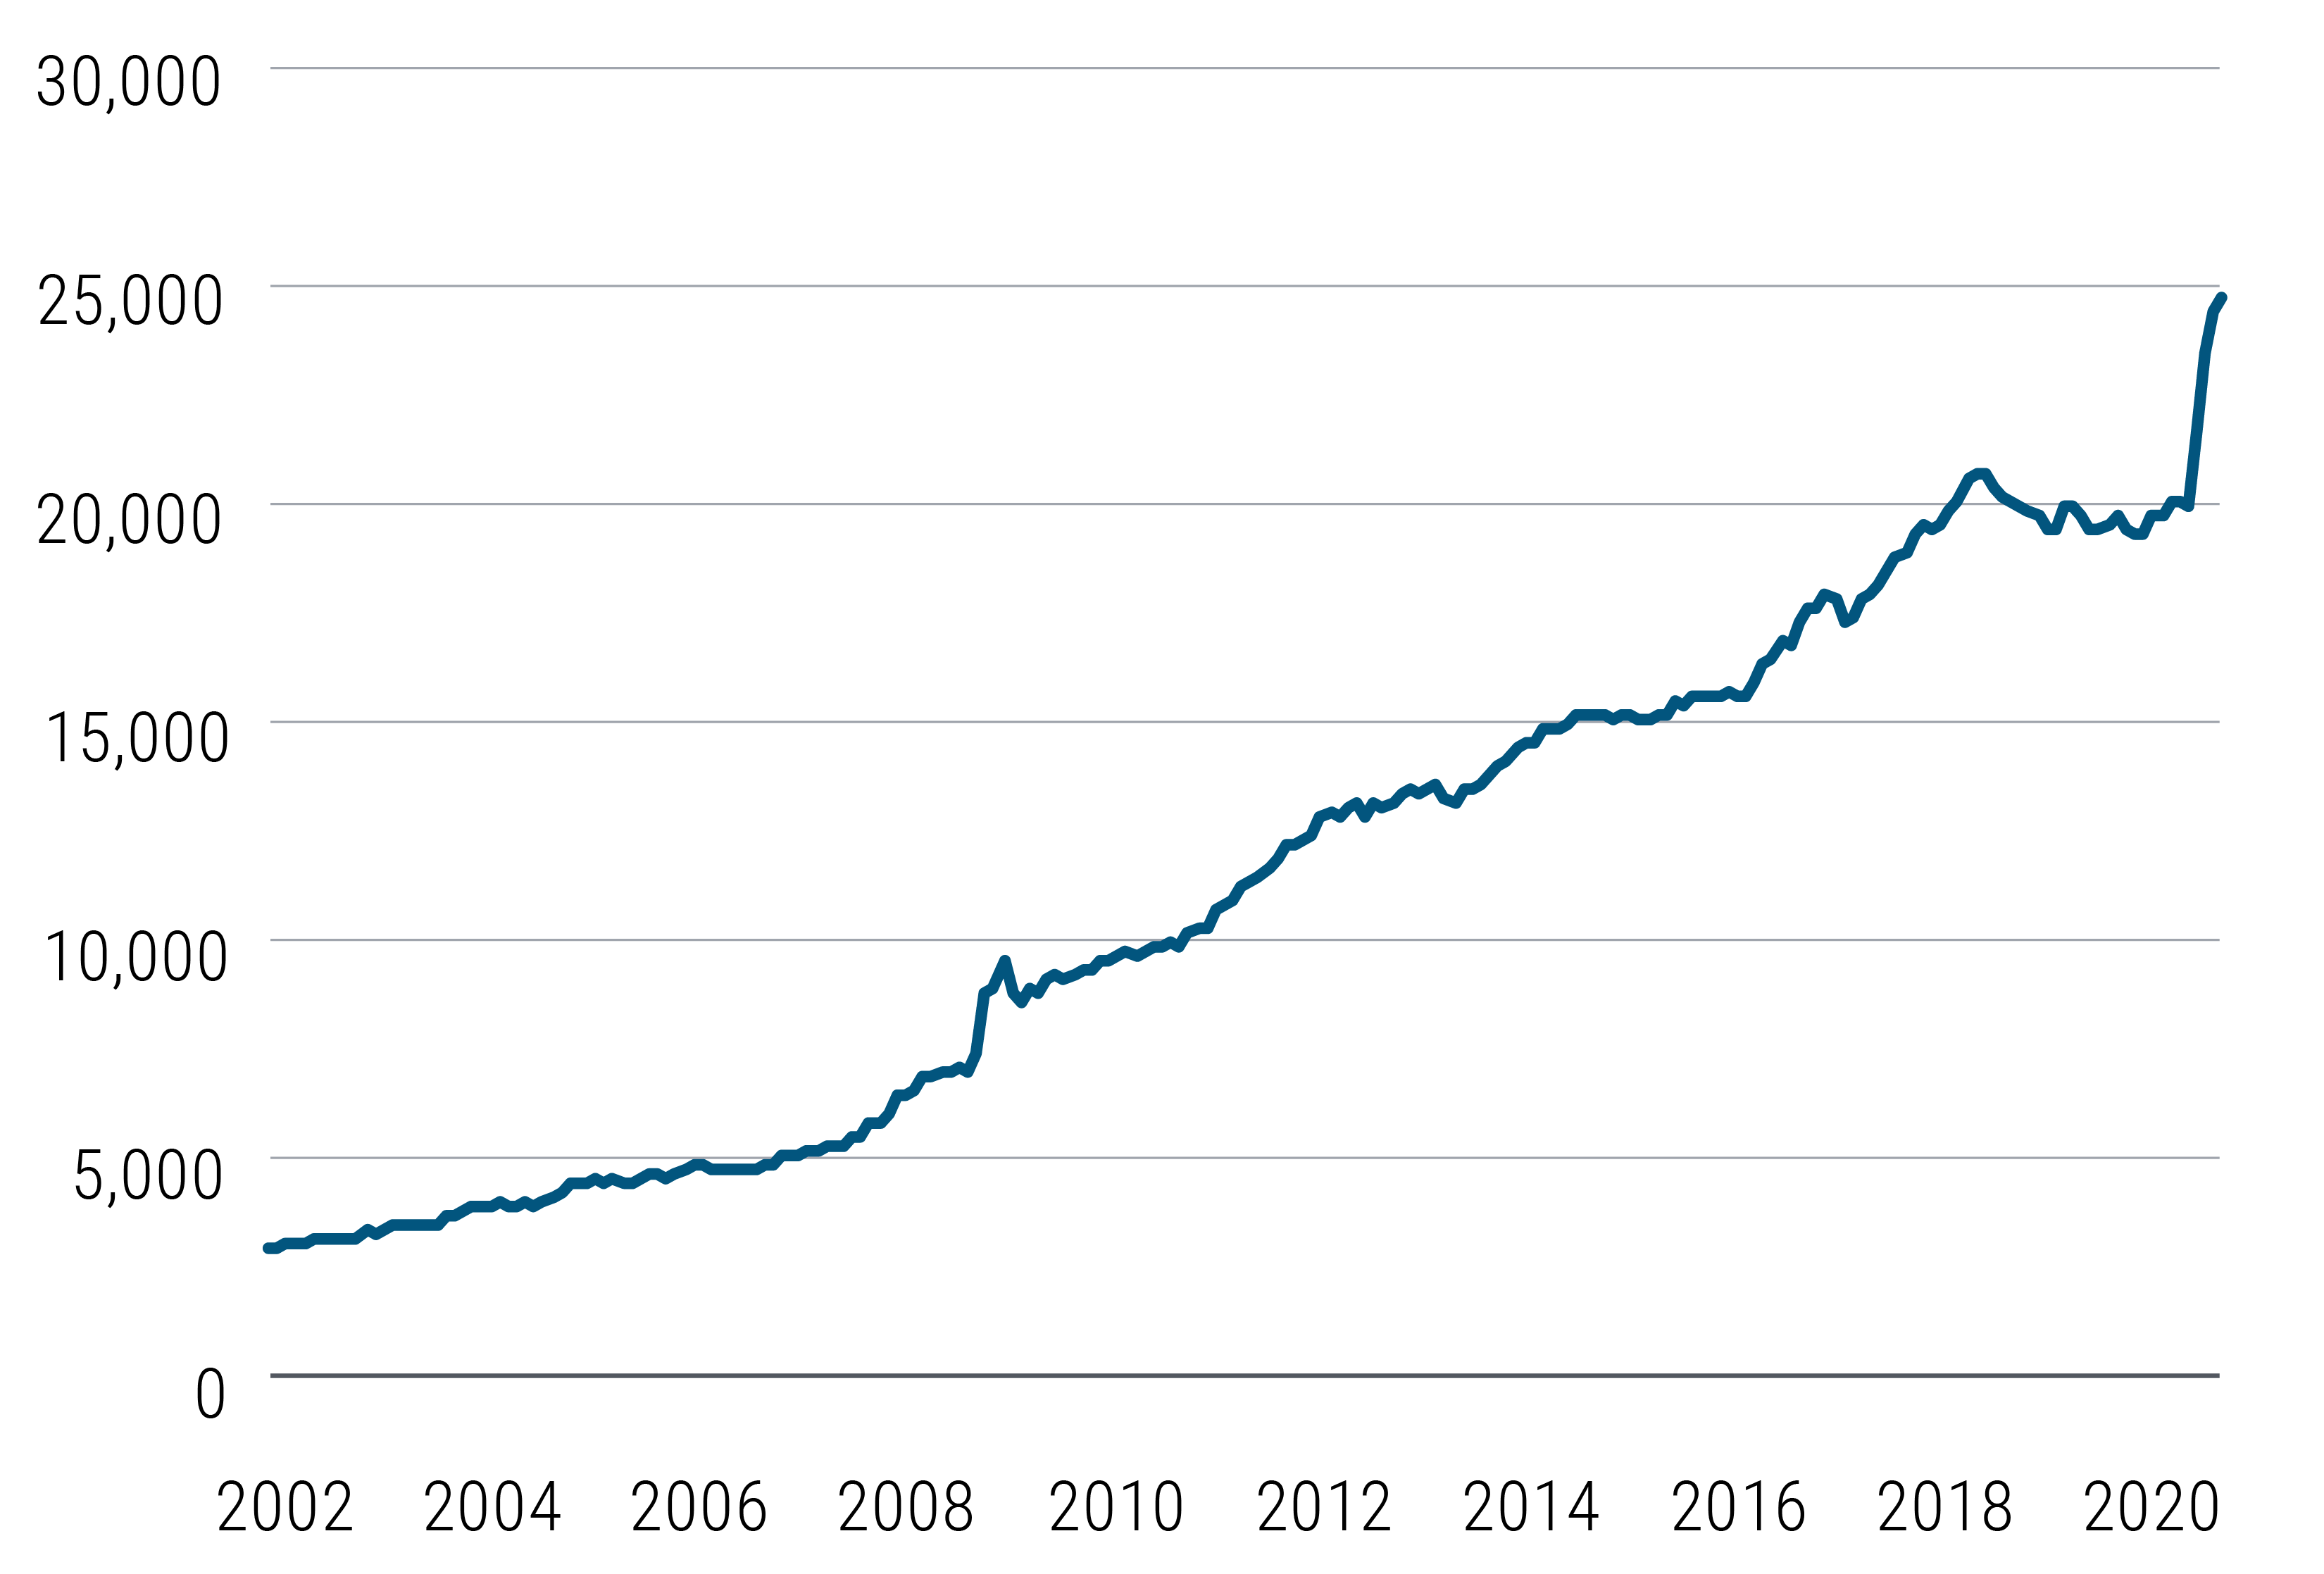 圖一顯示四大央行（聯準會、歐洲央行、日本央行、與中國人民銀行）的資產負債表總值已從2002年不到5兆美元，至今已膨脹至25兆美元左右，且今年各國推出規模空前的貨幣政策，令資產負債表大幅攀升。資料來源：彭博，截至2020年6月18日。